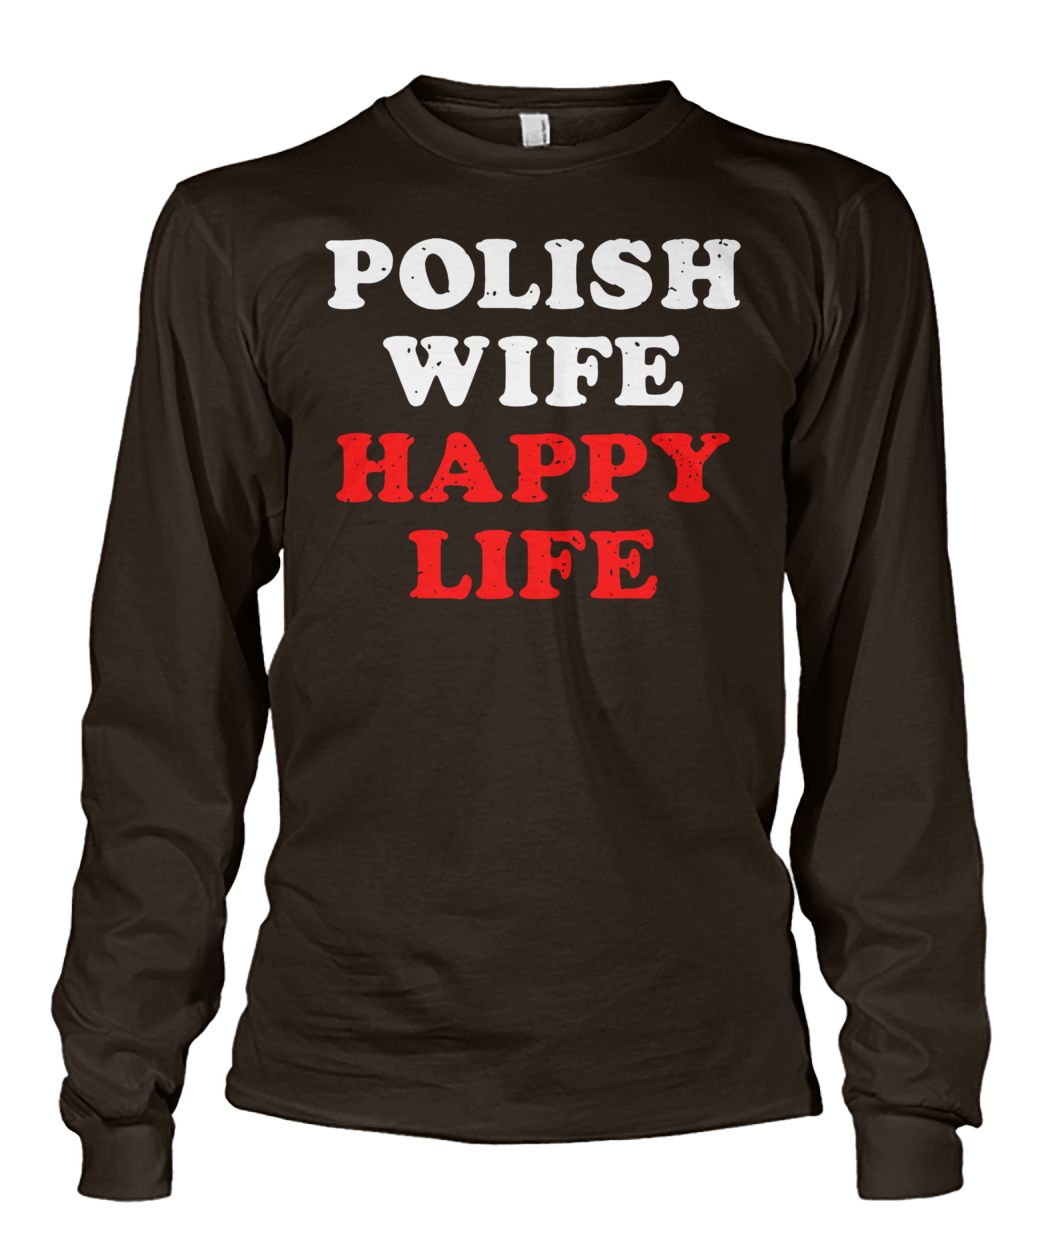 Polish wife happy life unisex long sleeve